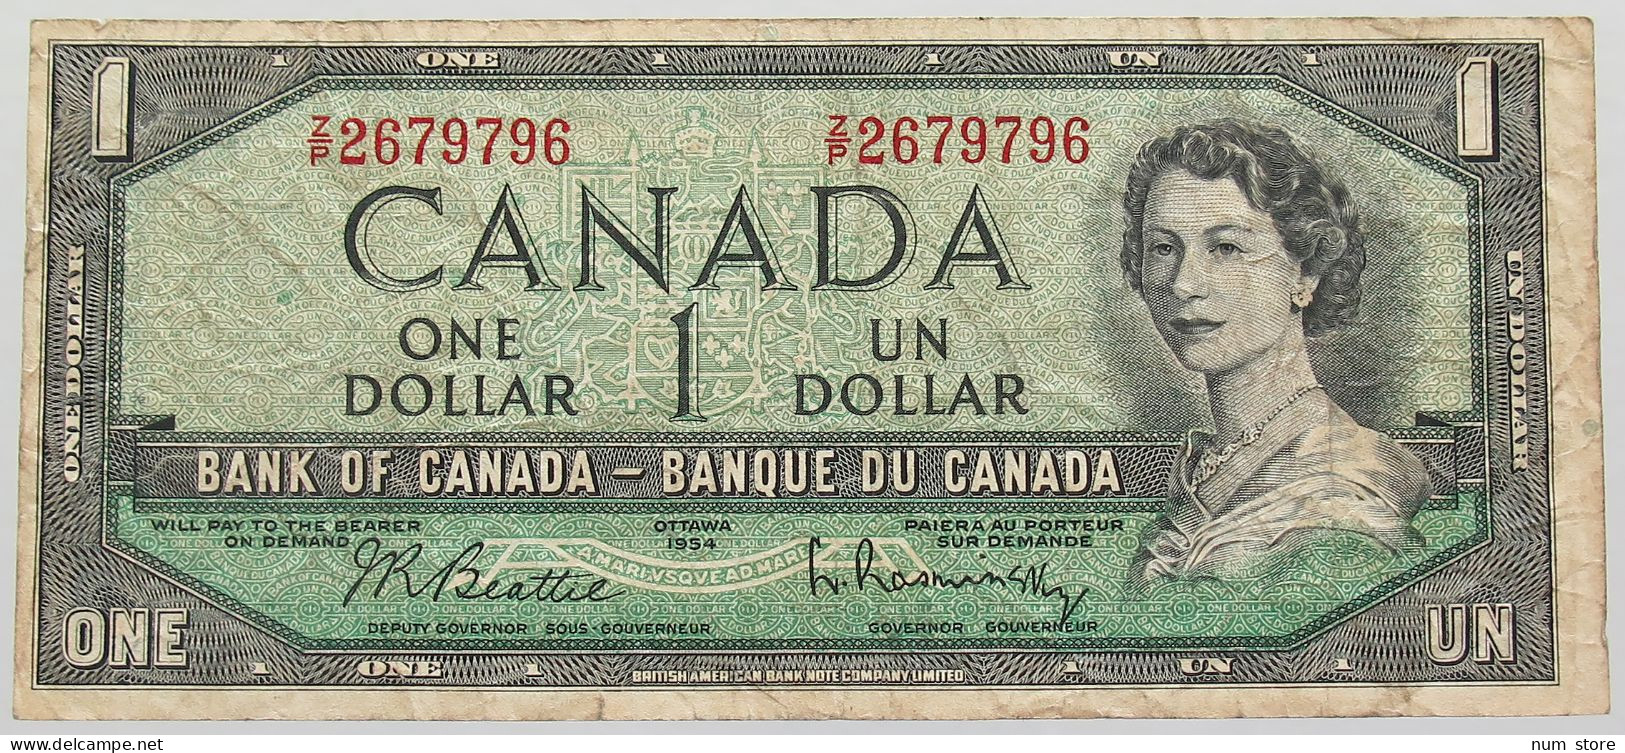 CANADA 1 DOLLAR 1954 #alb016 0457 - Kanada